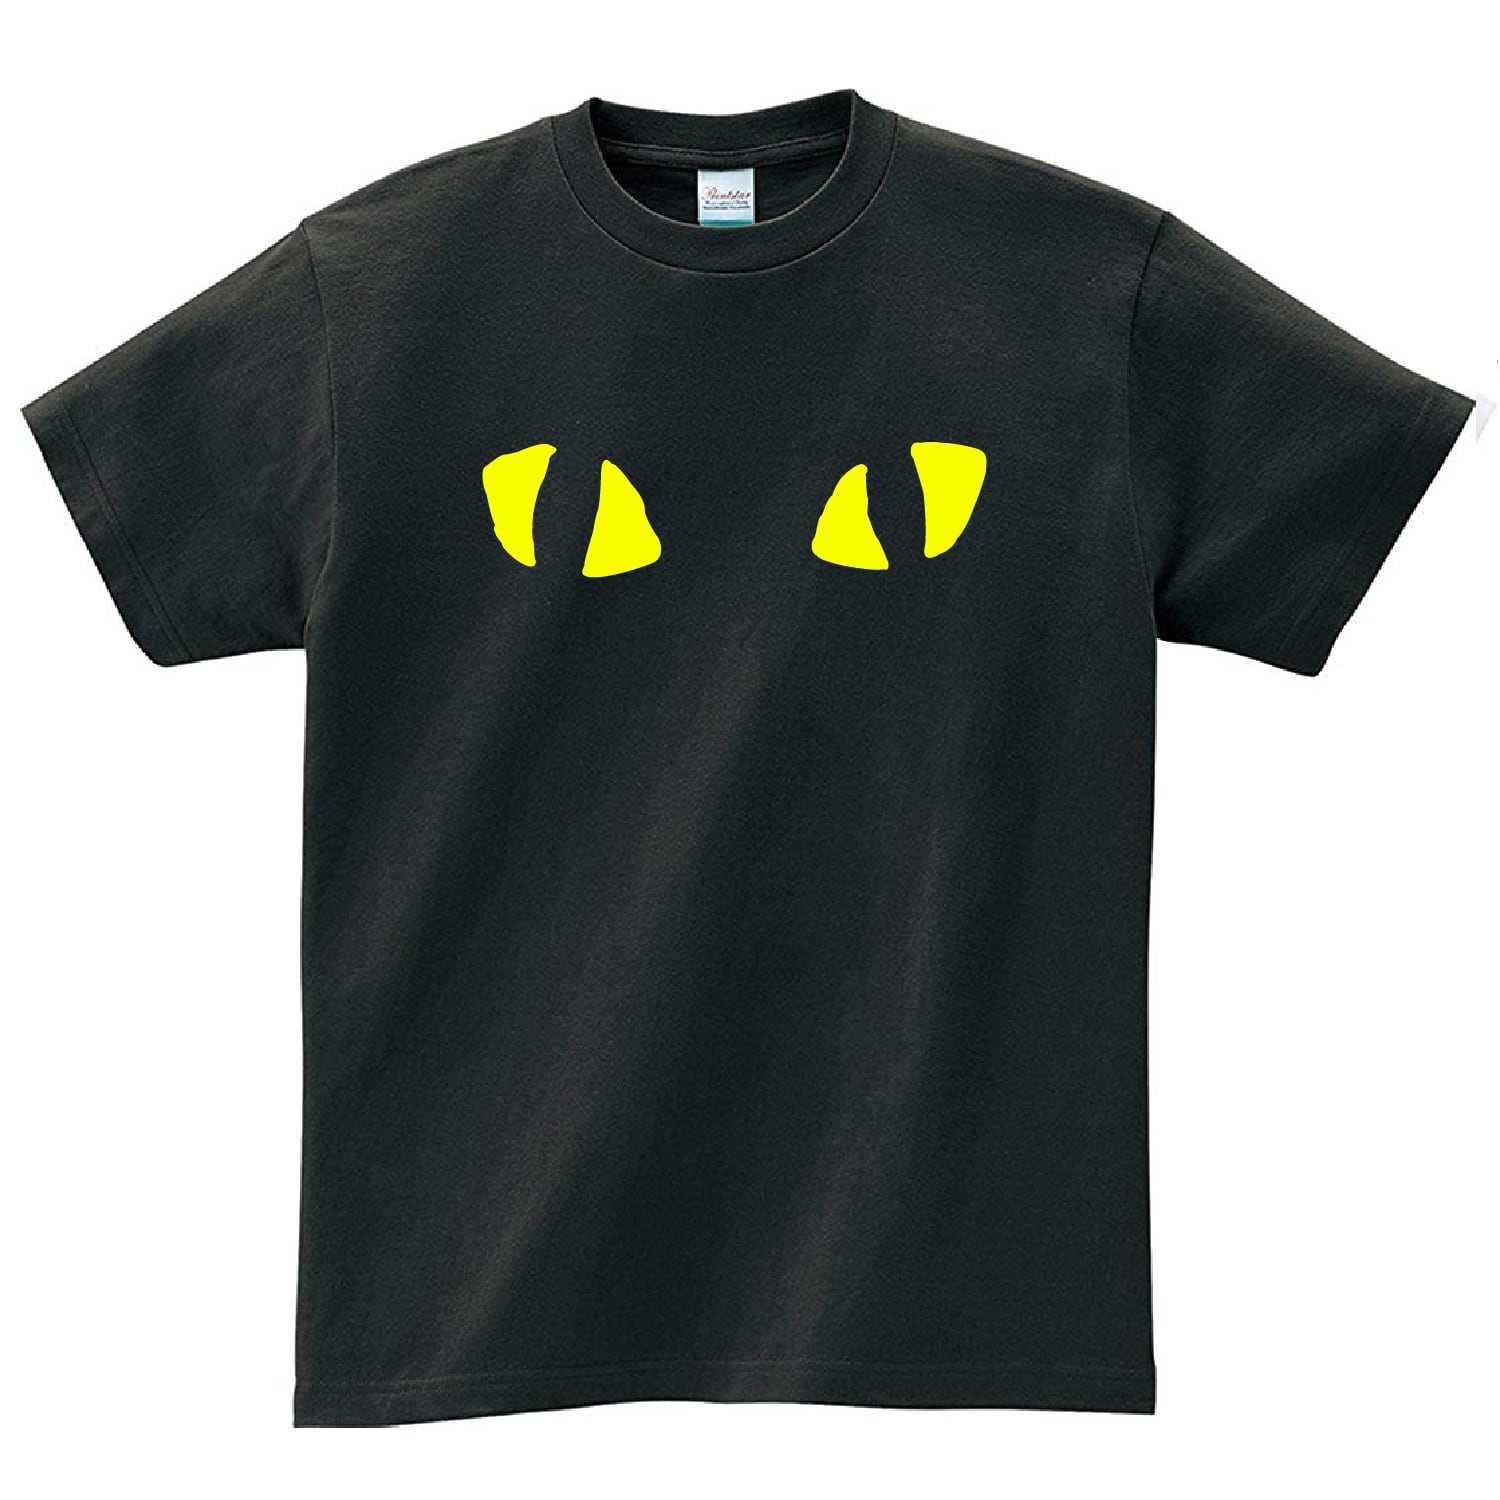 猫の目 Tシャツ メンズ レディース 半袖 バンド シンプル ゆったり おしゃれ トップス 黒 30代 40代 ペアルック プレゼント 大きいサイズ 綿100% 160 S M L XL